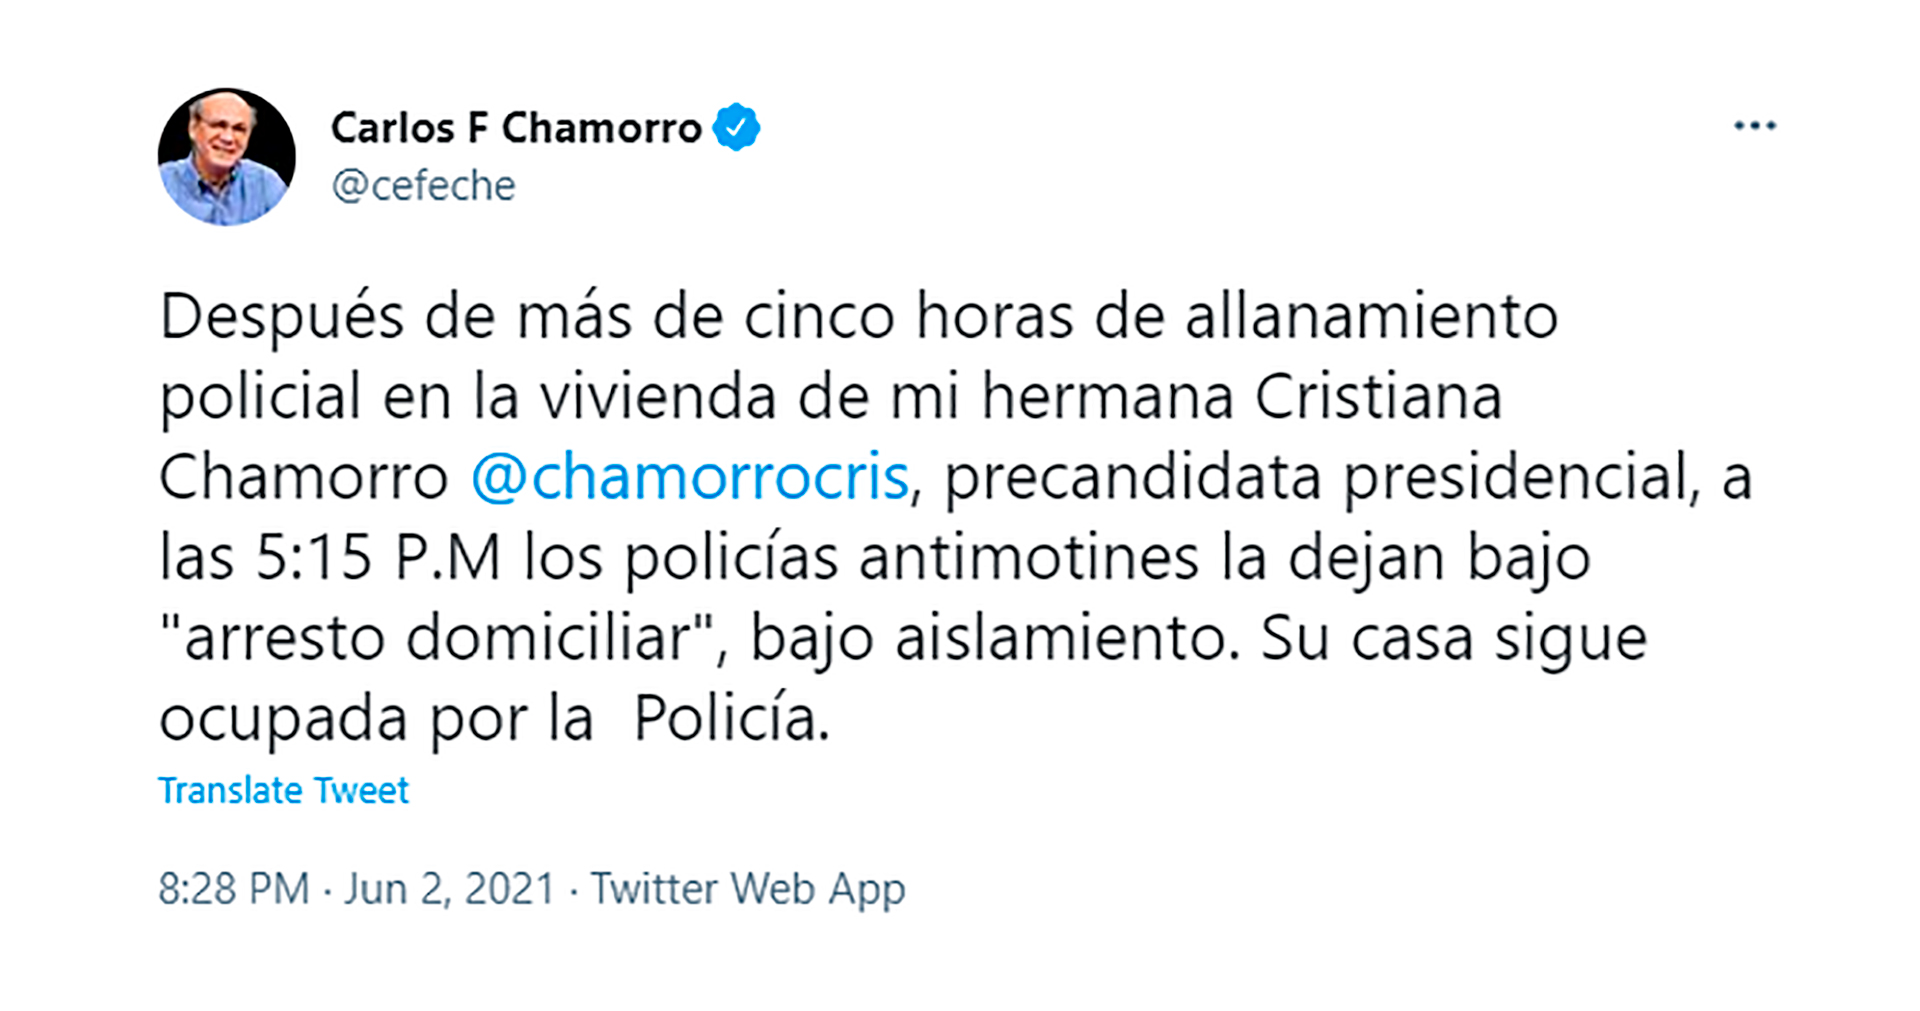 El tuit del periodista Carlos Fernando Chamorro sobre la detención de su hermana